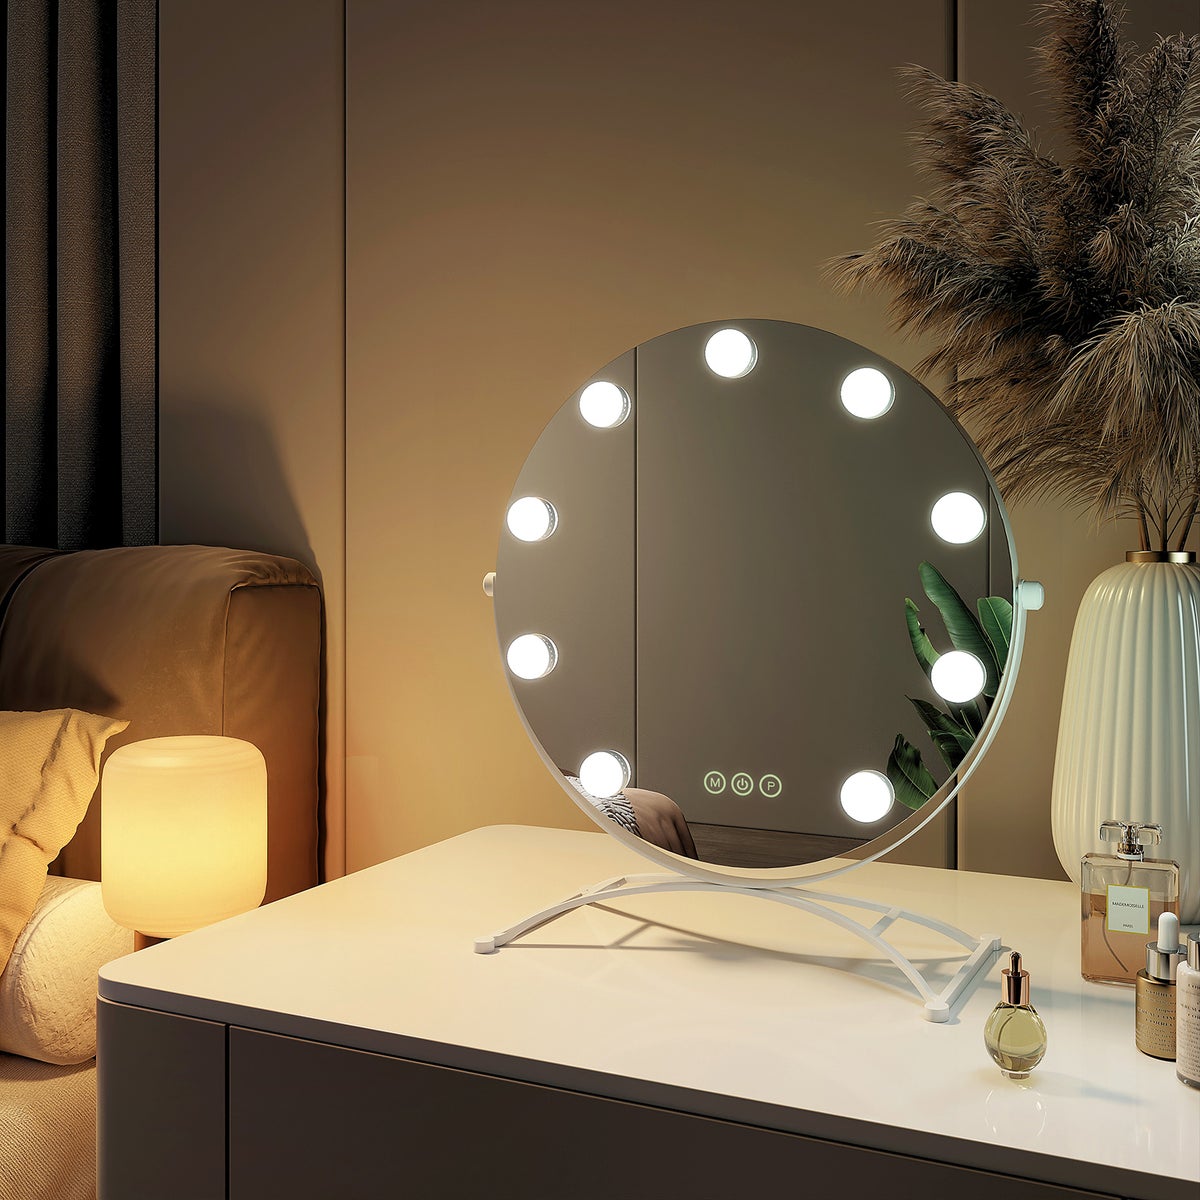 EMKE Runder Schminkspiegel Hollywood Spiegel mit Beleuchtung LED Tischspiegel, mit Touch, 3 Lichtfarben,9 Dimmbaren LED-Leuchtmitteln,7 x Vergrößerungsspiegel,Memory-Funktion, 360° Drehbar,Weiß,40 cm